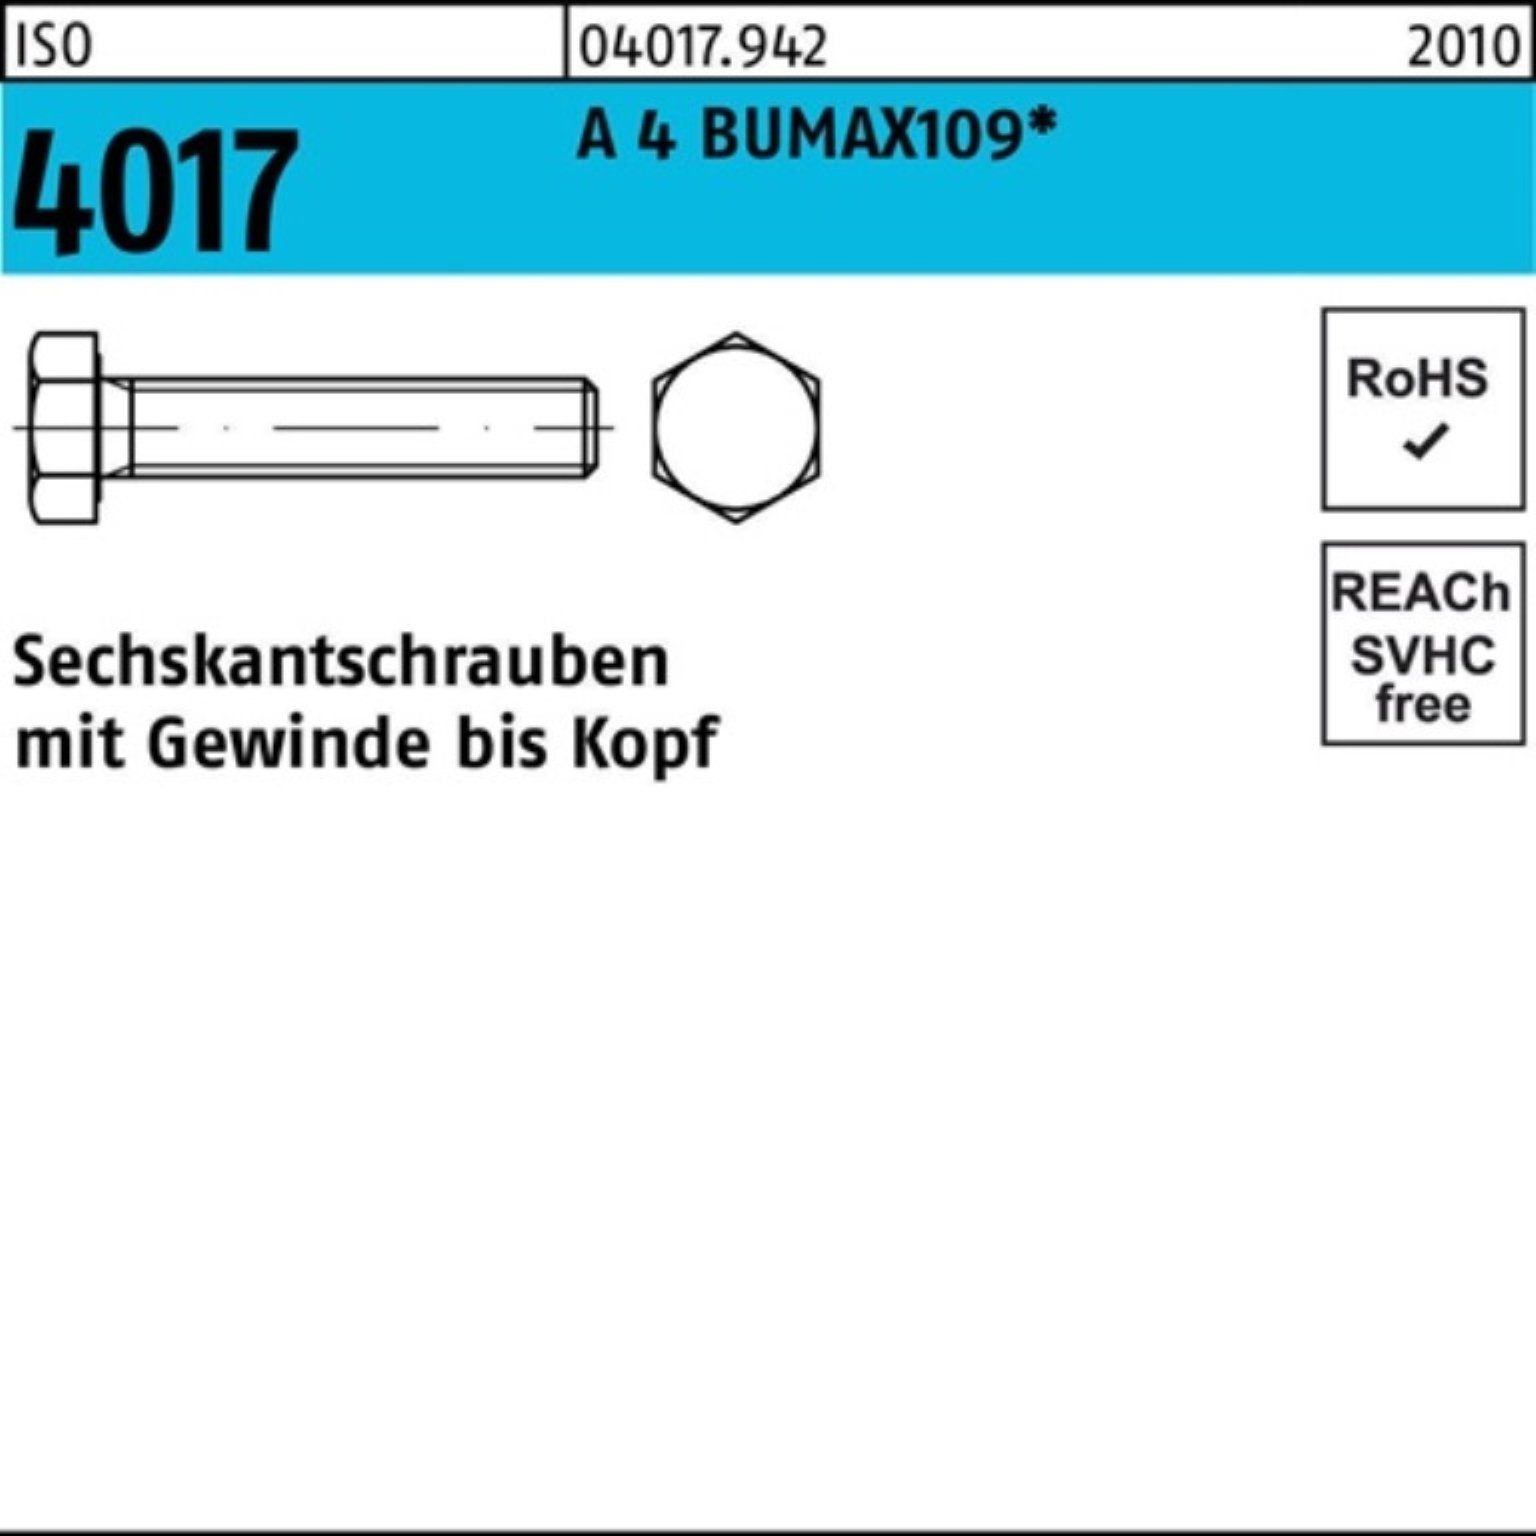 Sechskantschraube ISO 60 Stüc 4 Bufab 100er Sechskantschraube A VG Pack 4017 BUMAX109 25 M16x